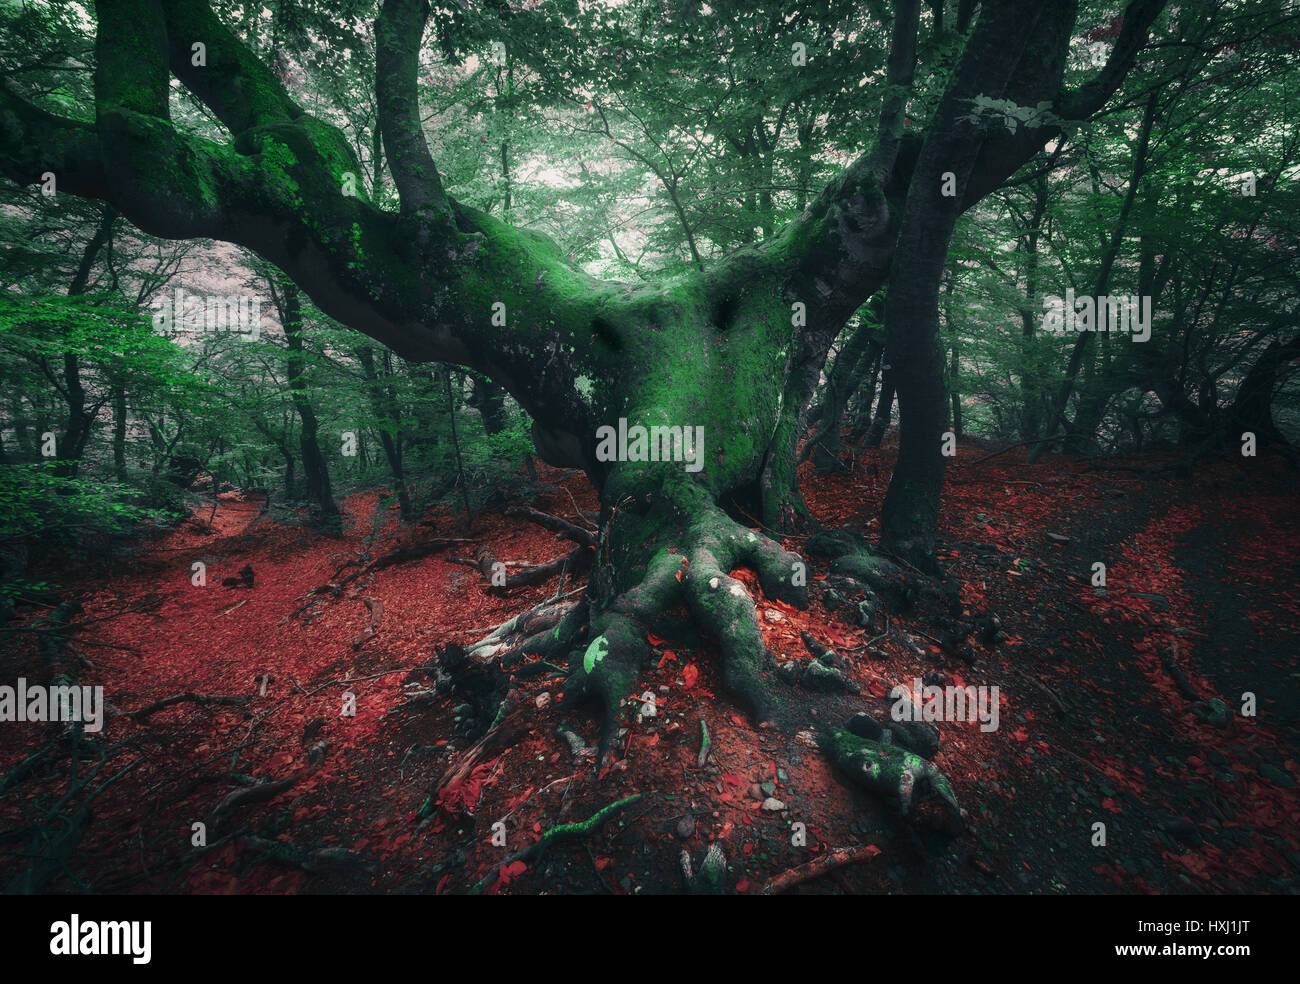 Spooky tree. Mistica della foresta scura nella nebbia con il vecchio albero con grosse radici coperte moss e colorati di rosso e verde fogliame al crepuscolo in primavera. Orrore atmos Foto Stock